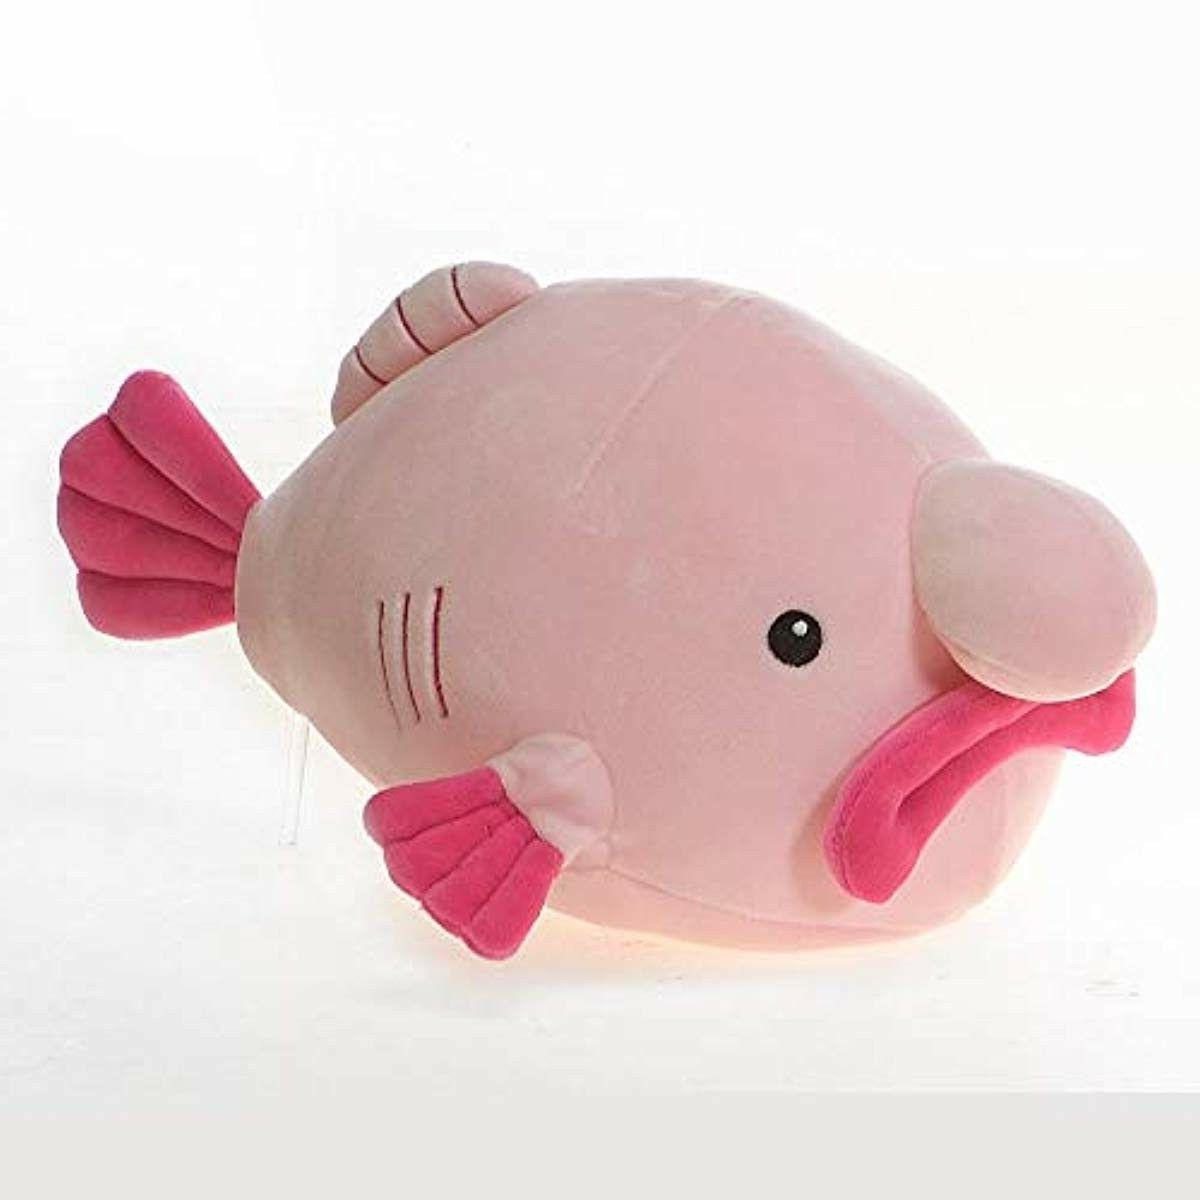 39 Blob Fish Plush - Pink Or Tie Dye